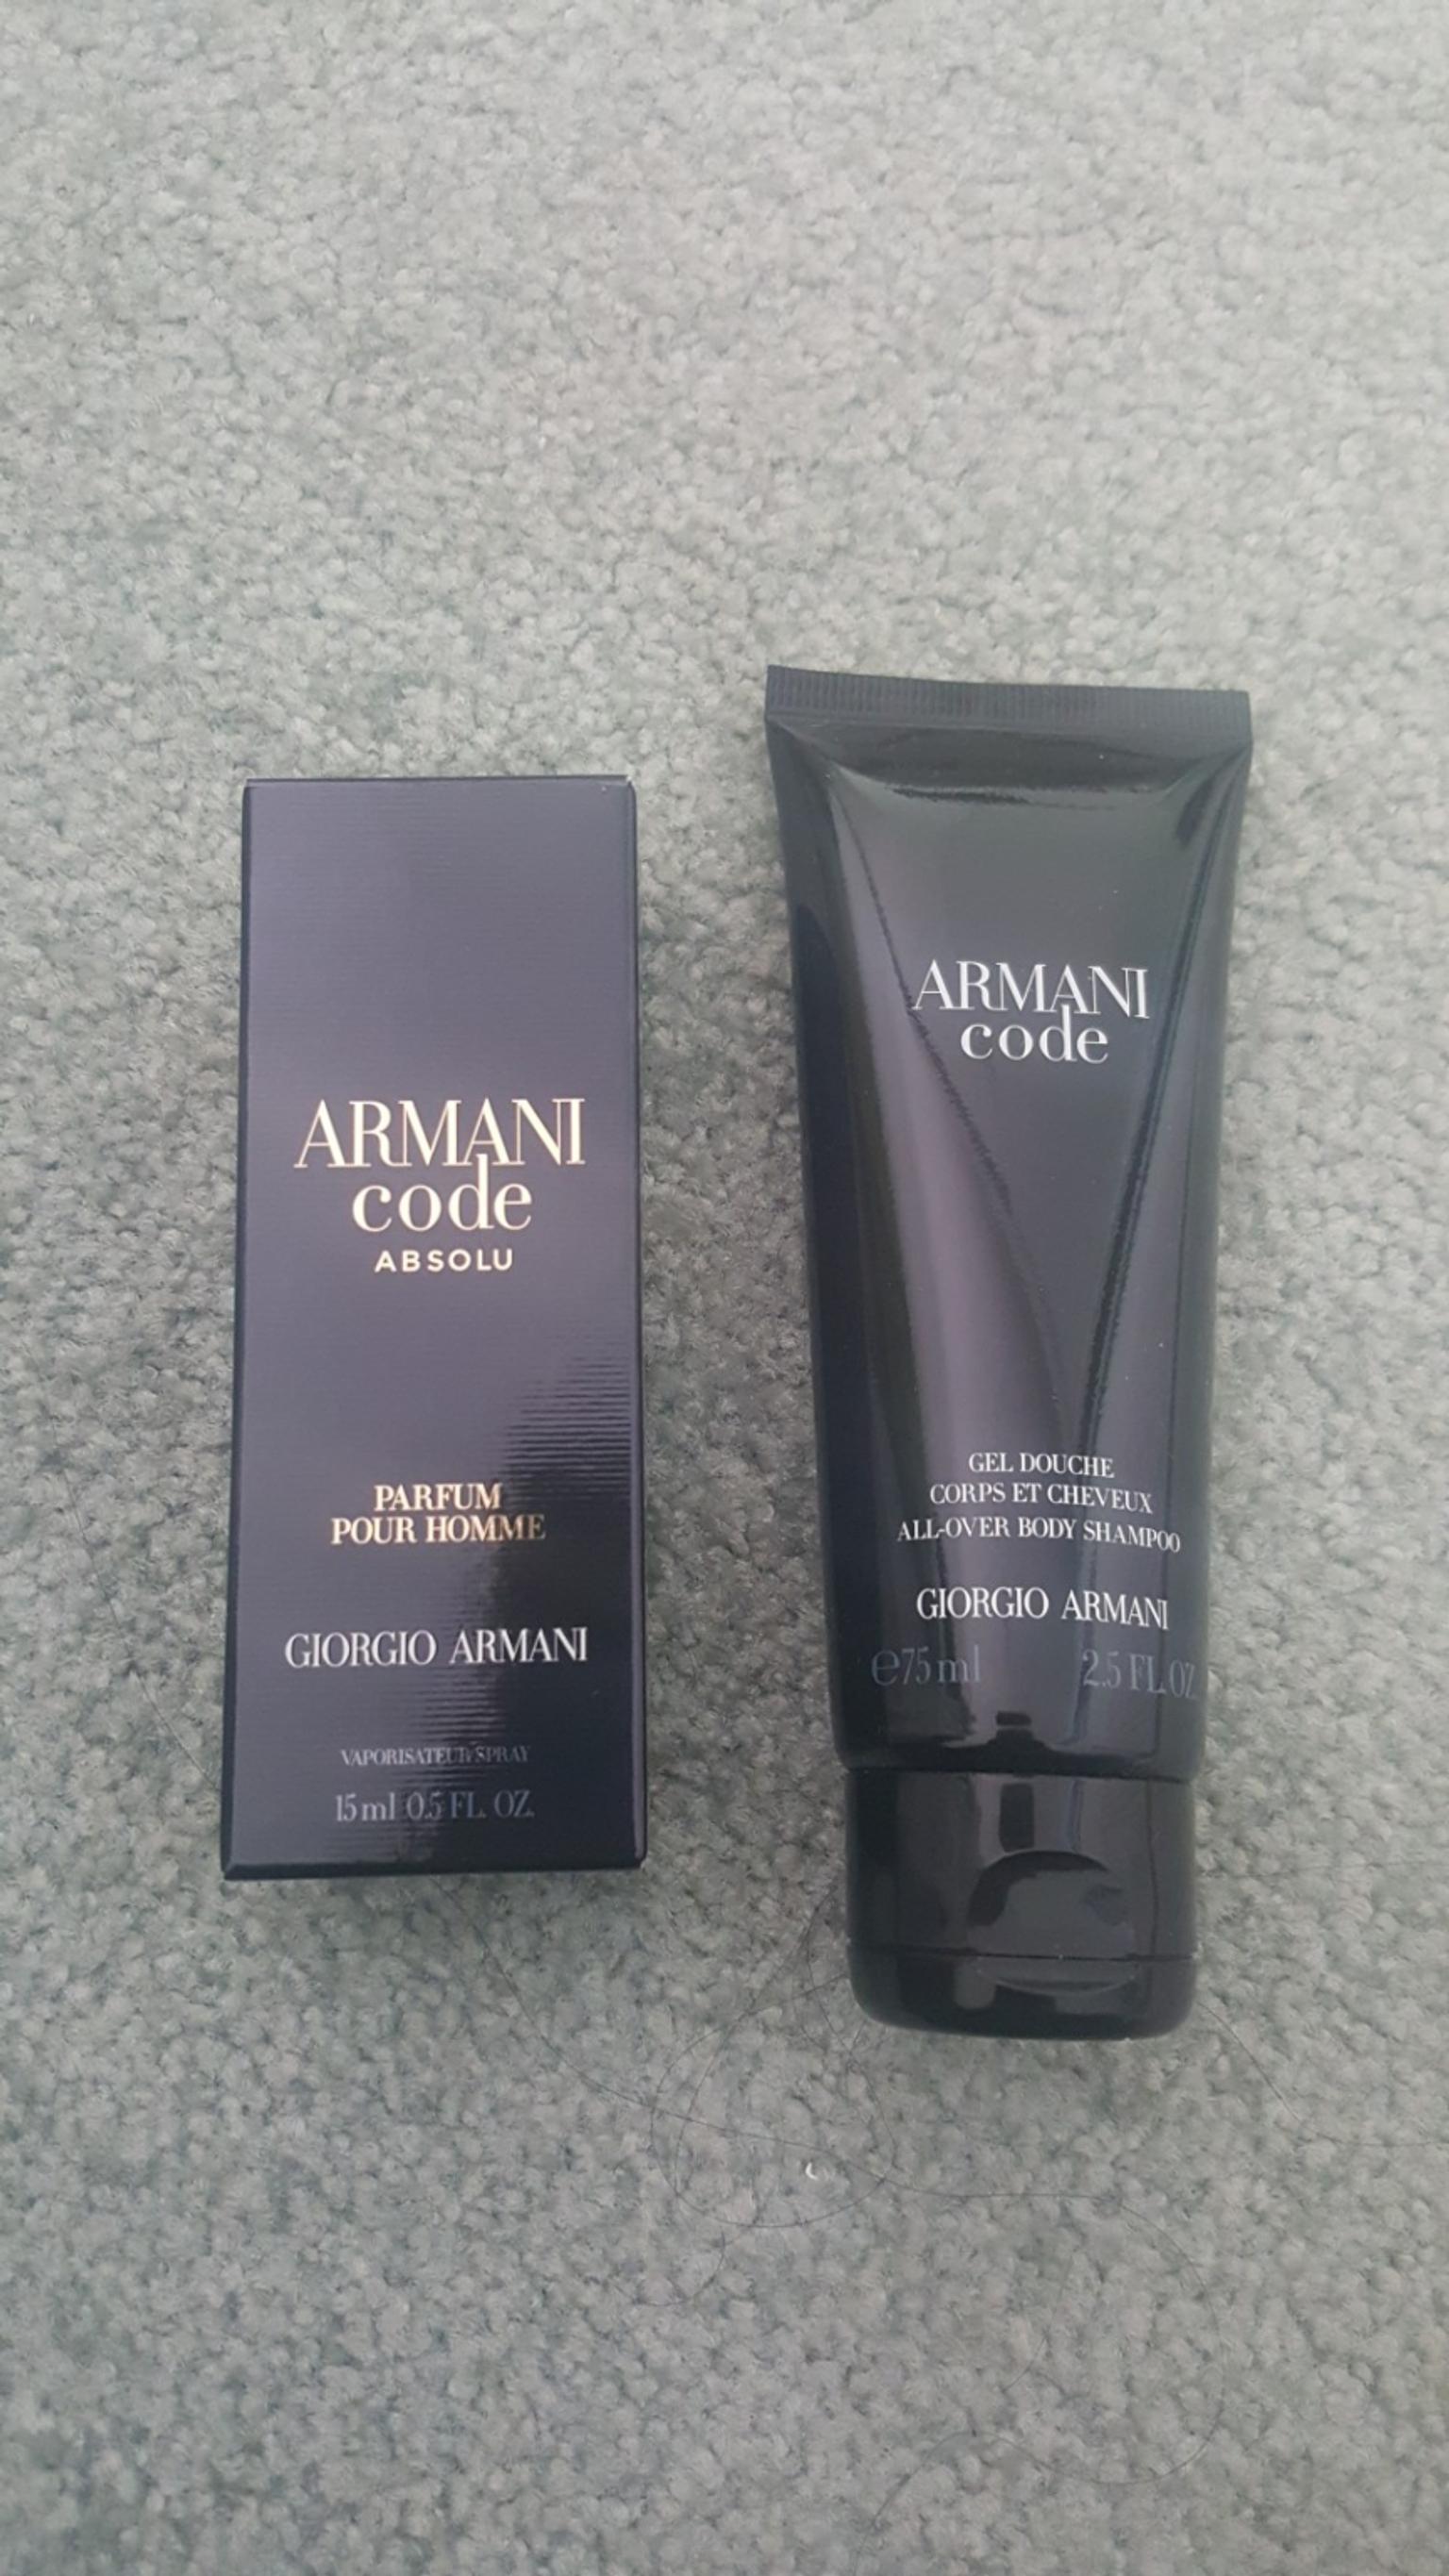 armani code all over body shampoo